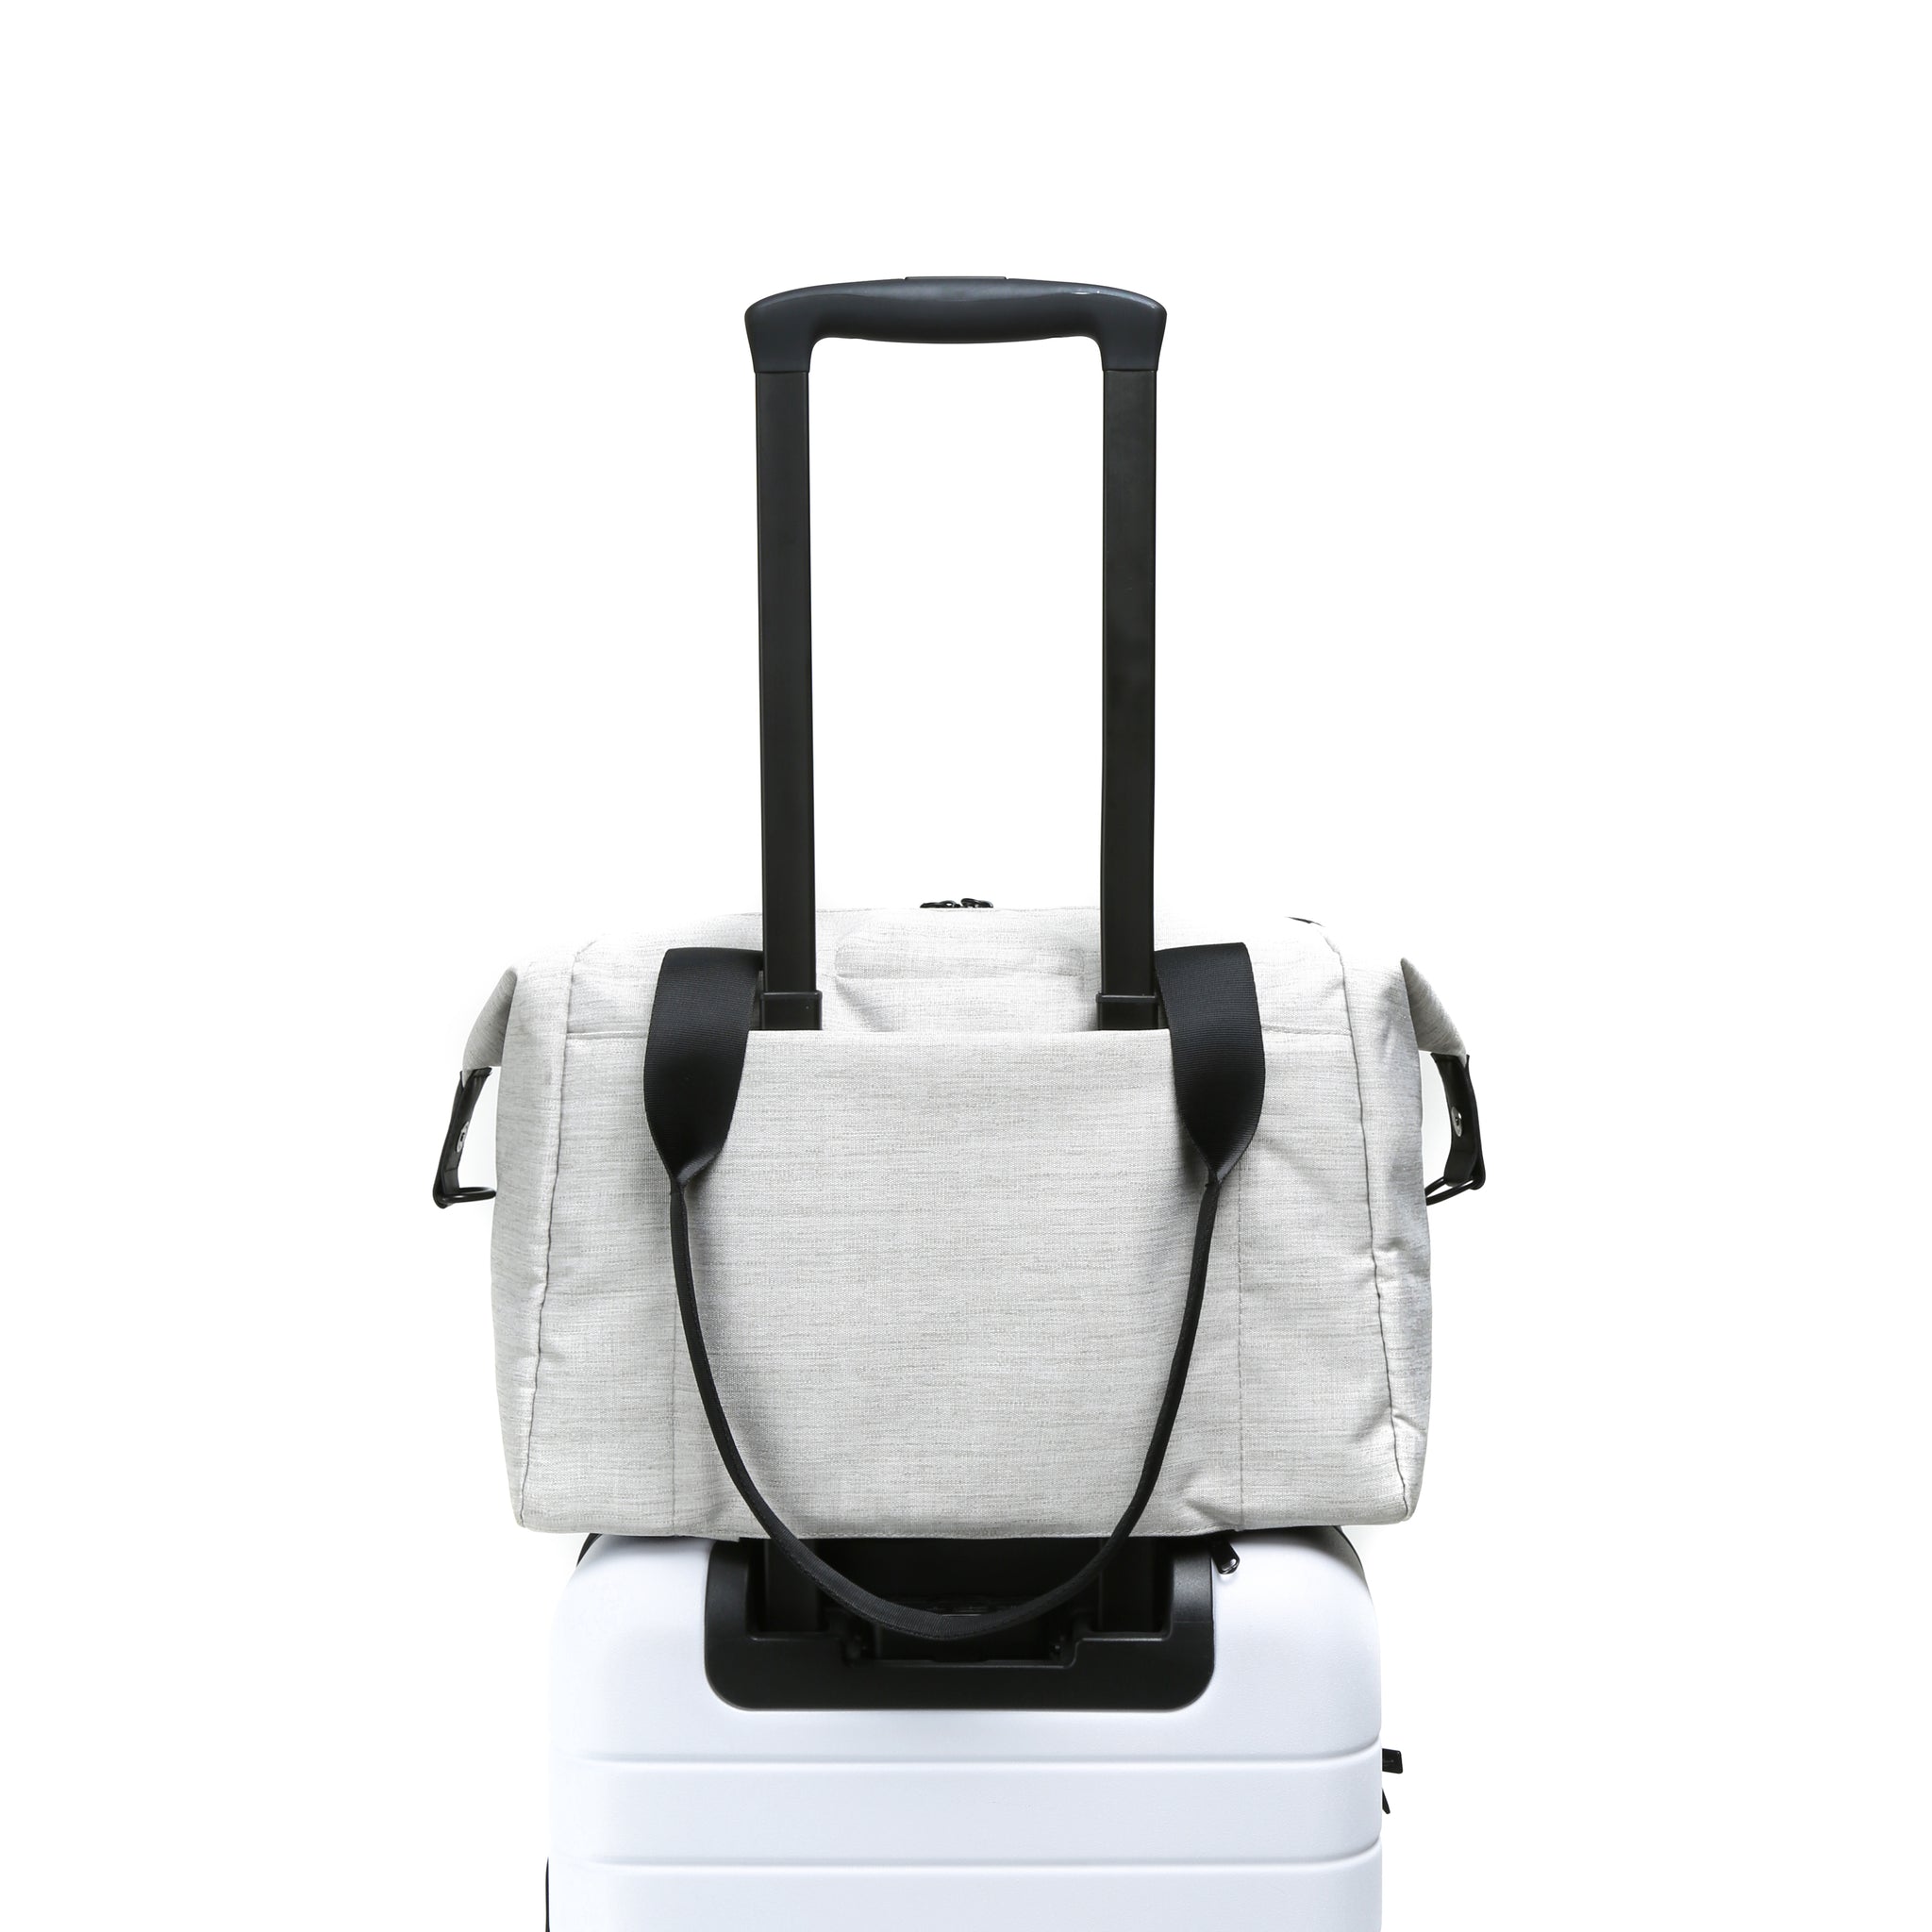 Vooray - Sac de voyage et sac de sport avec pochette pour ordinateur portable, poche pour chaussures et poche sèche